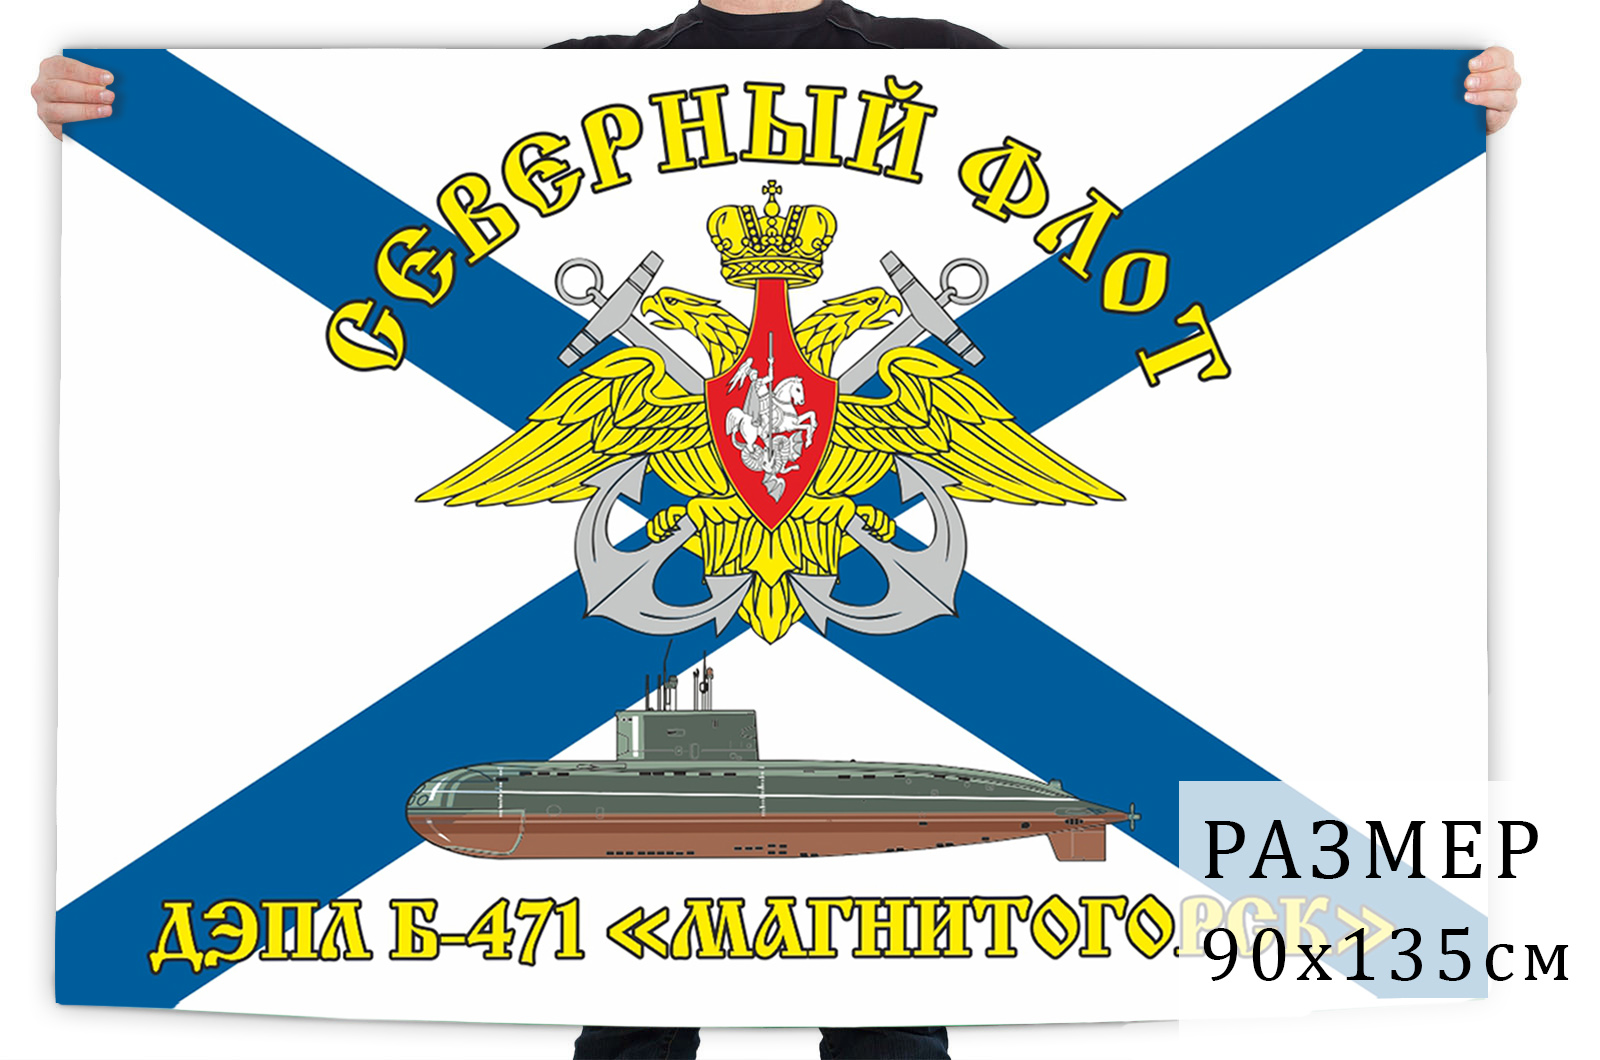 Заказать в интернете флаг ДЭПЛ Б-471 Магнитогорск Северный флот